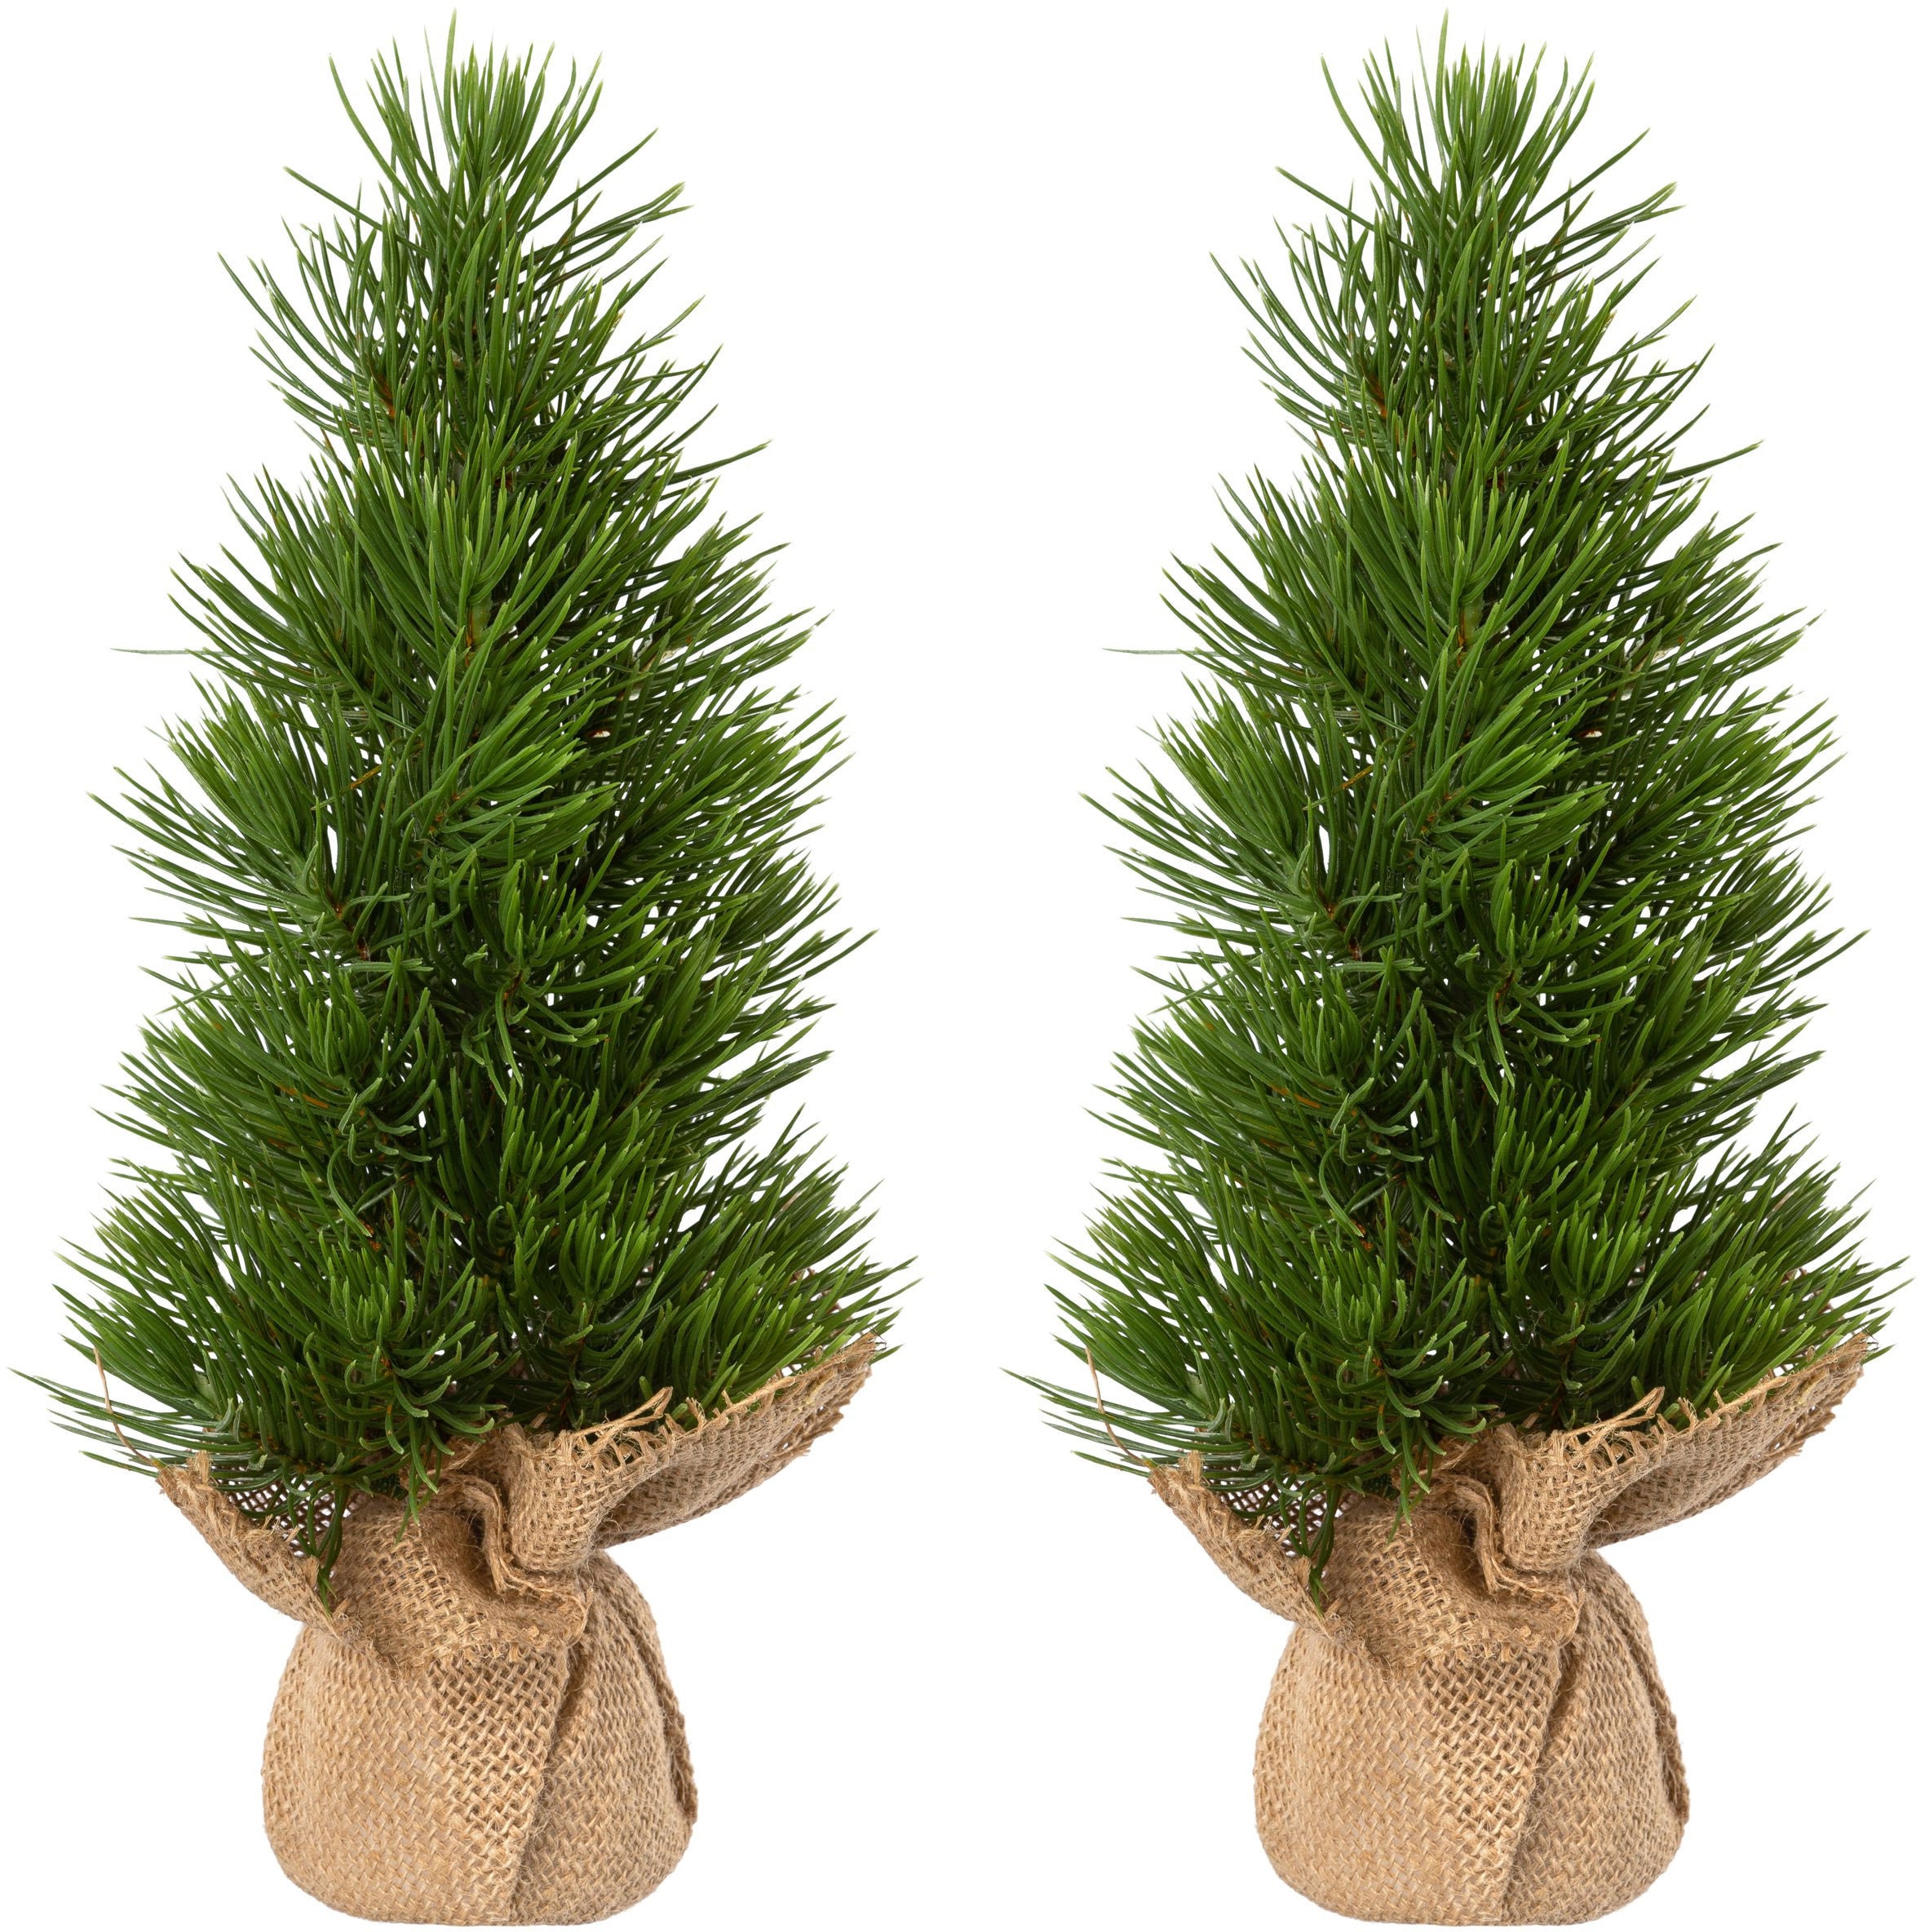 Künstlicher Weihnachtsbaum »Weihnachtsdeko, künstlicher Christbaum, Tannenbaum«, im...